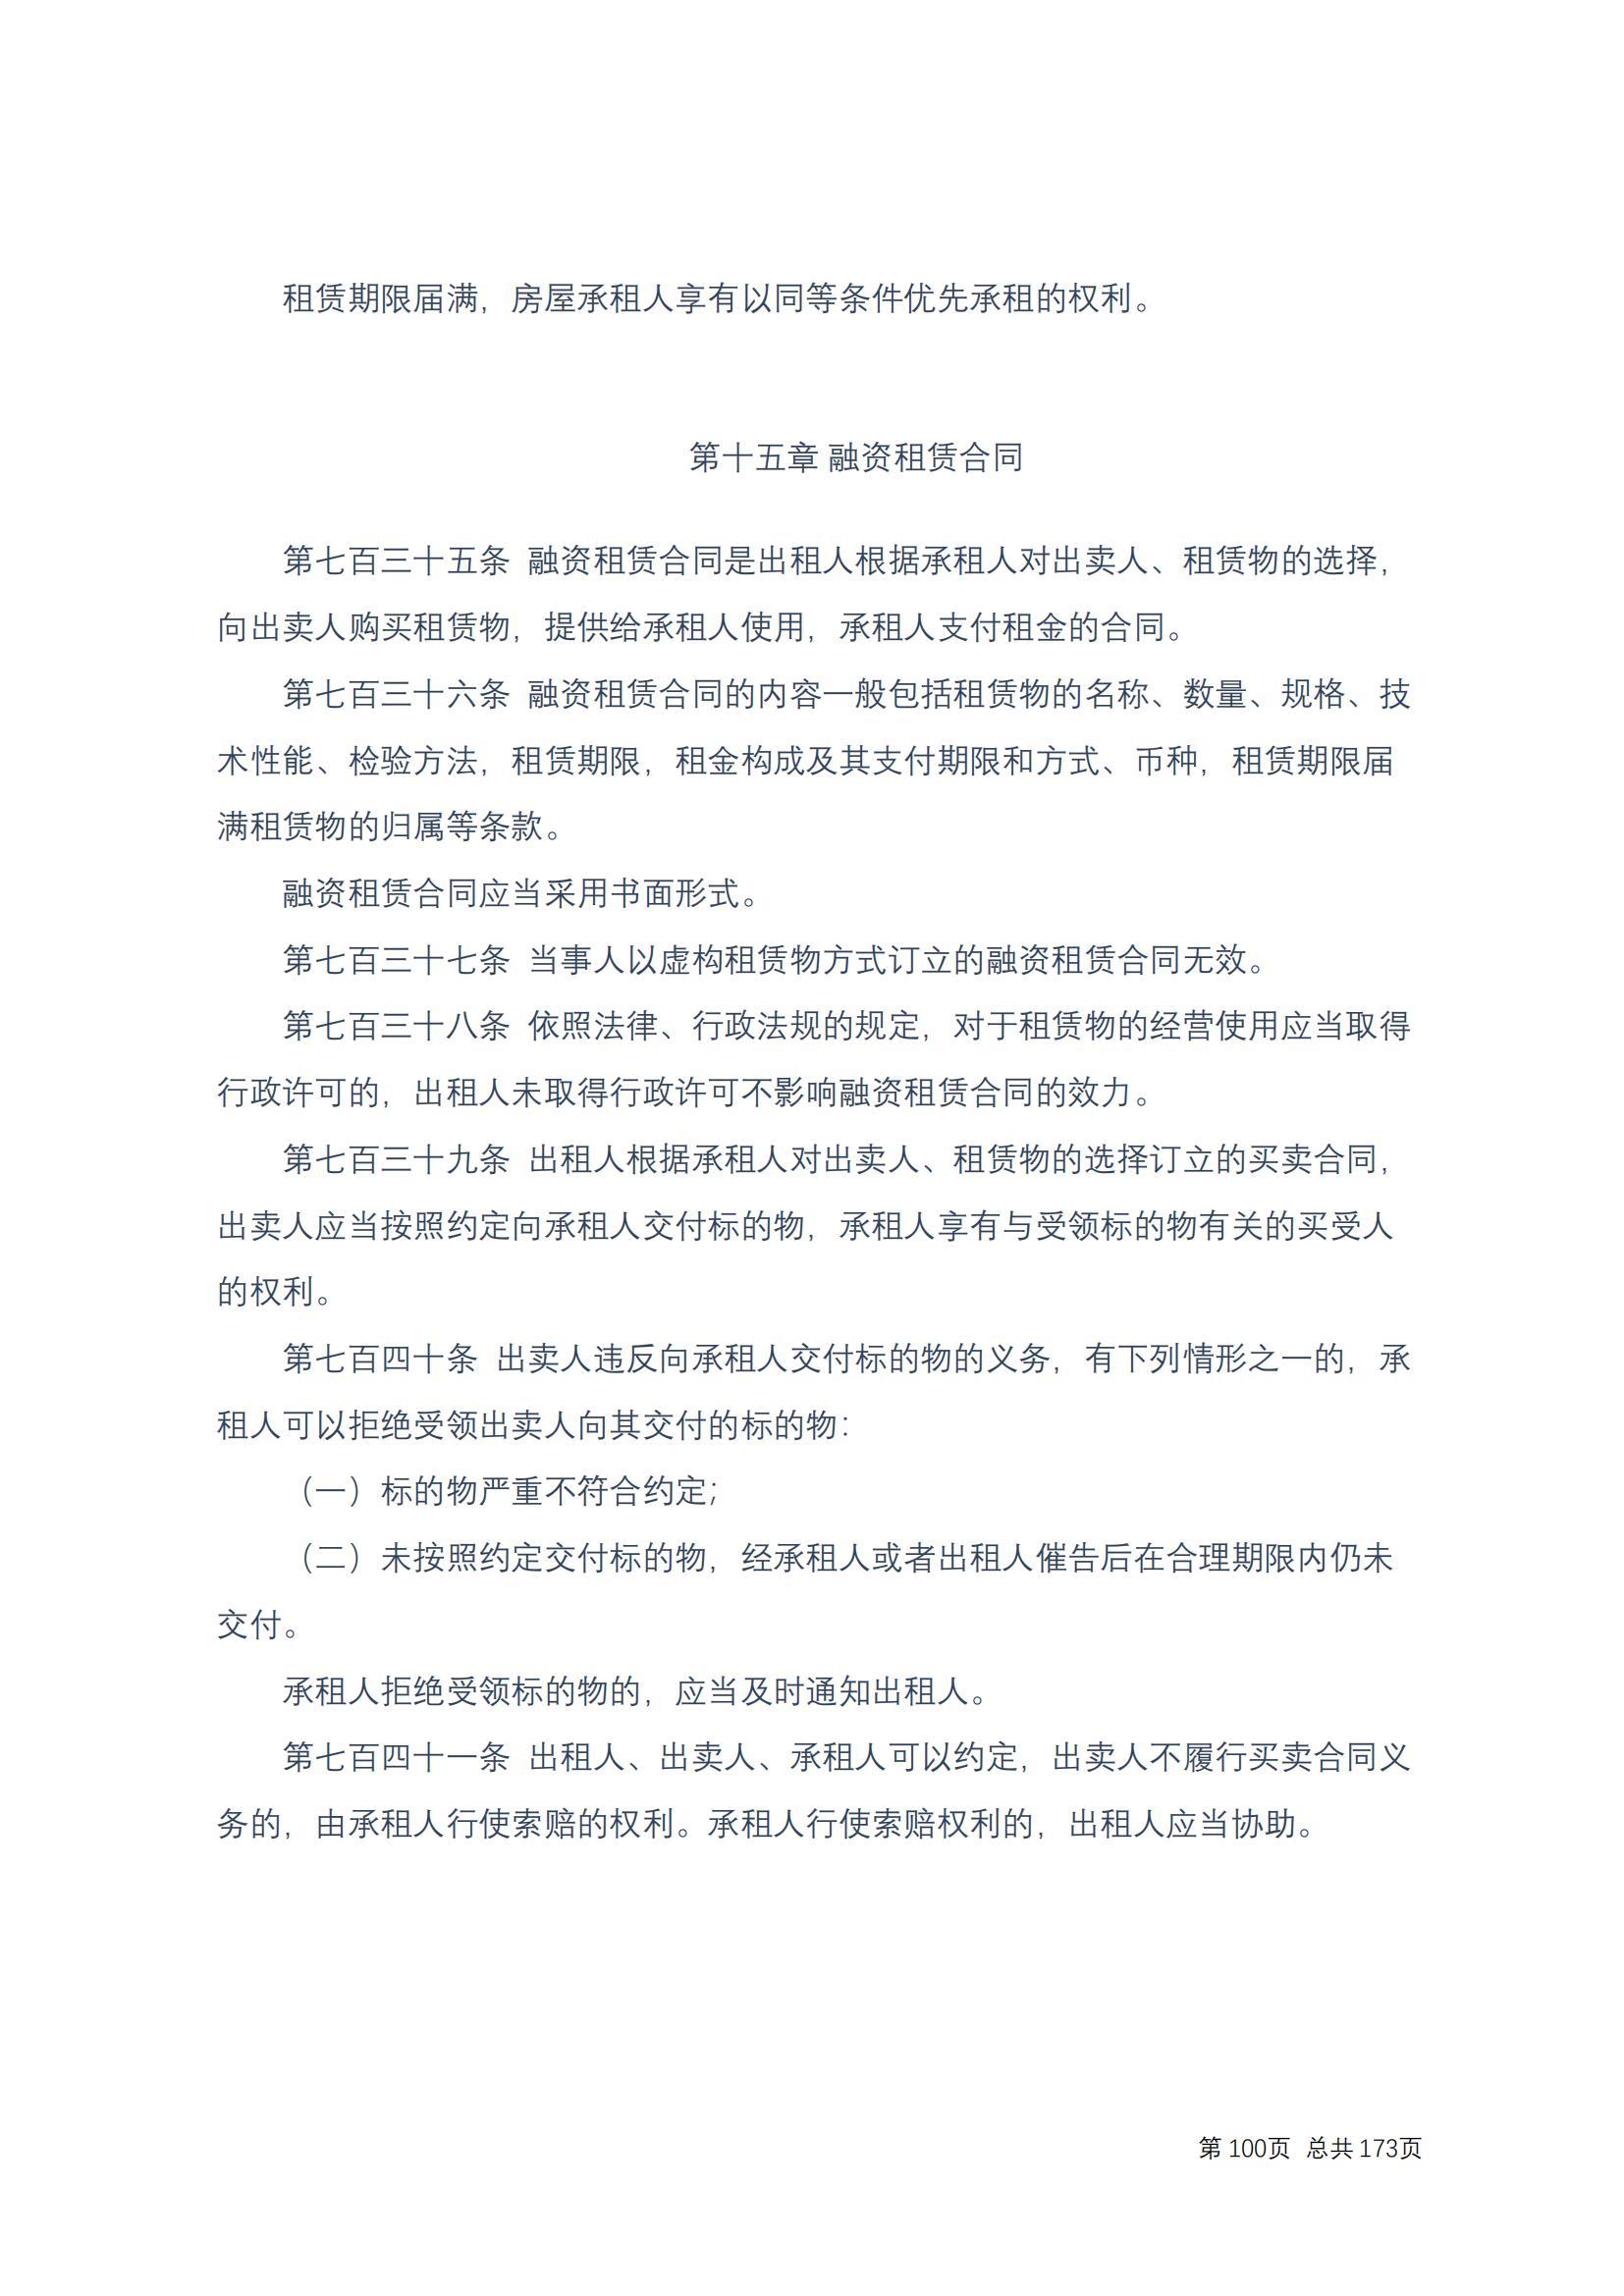 中华人民共和国民法典 修改过_99